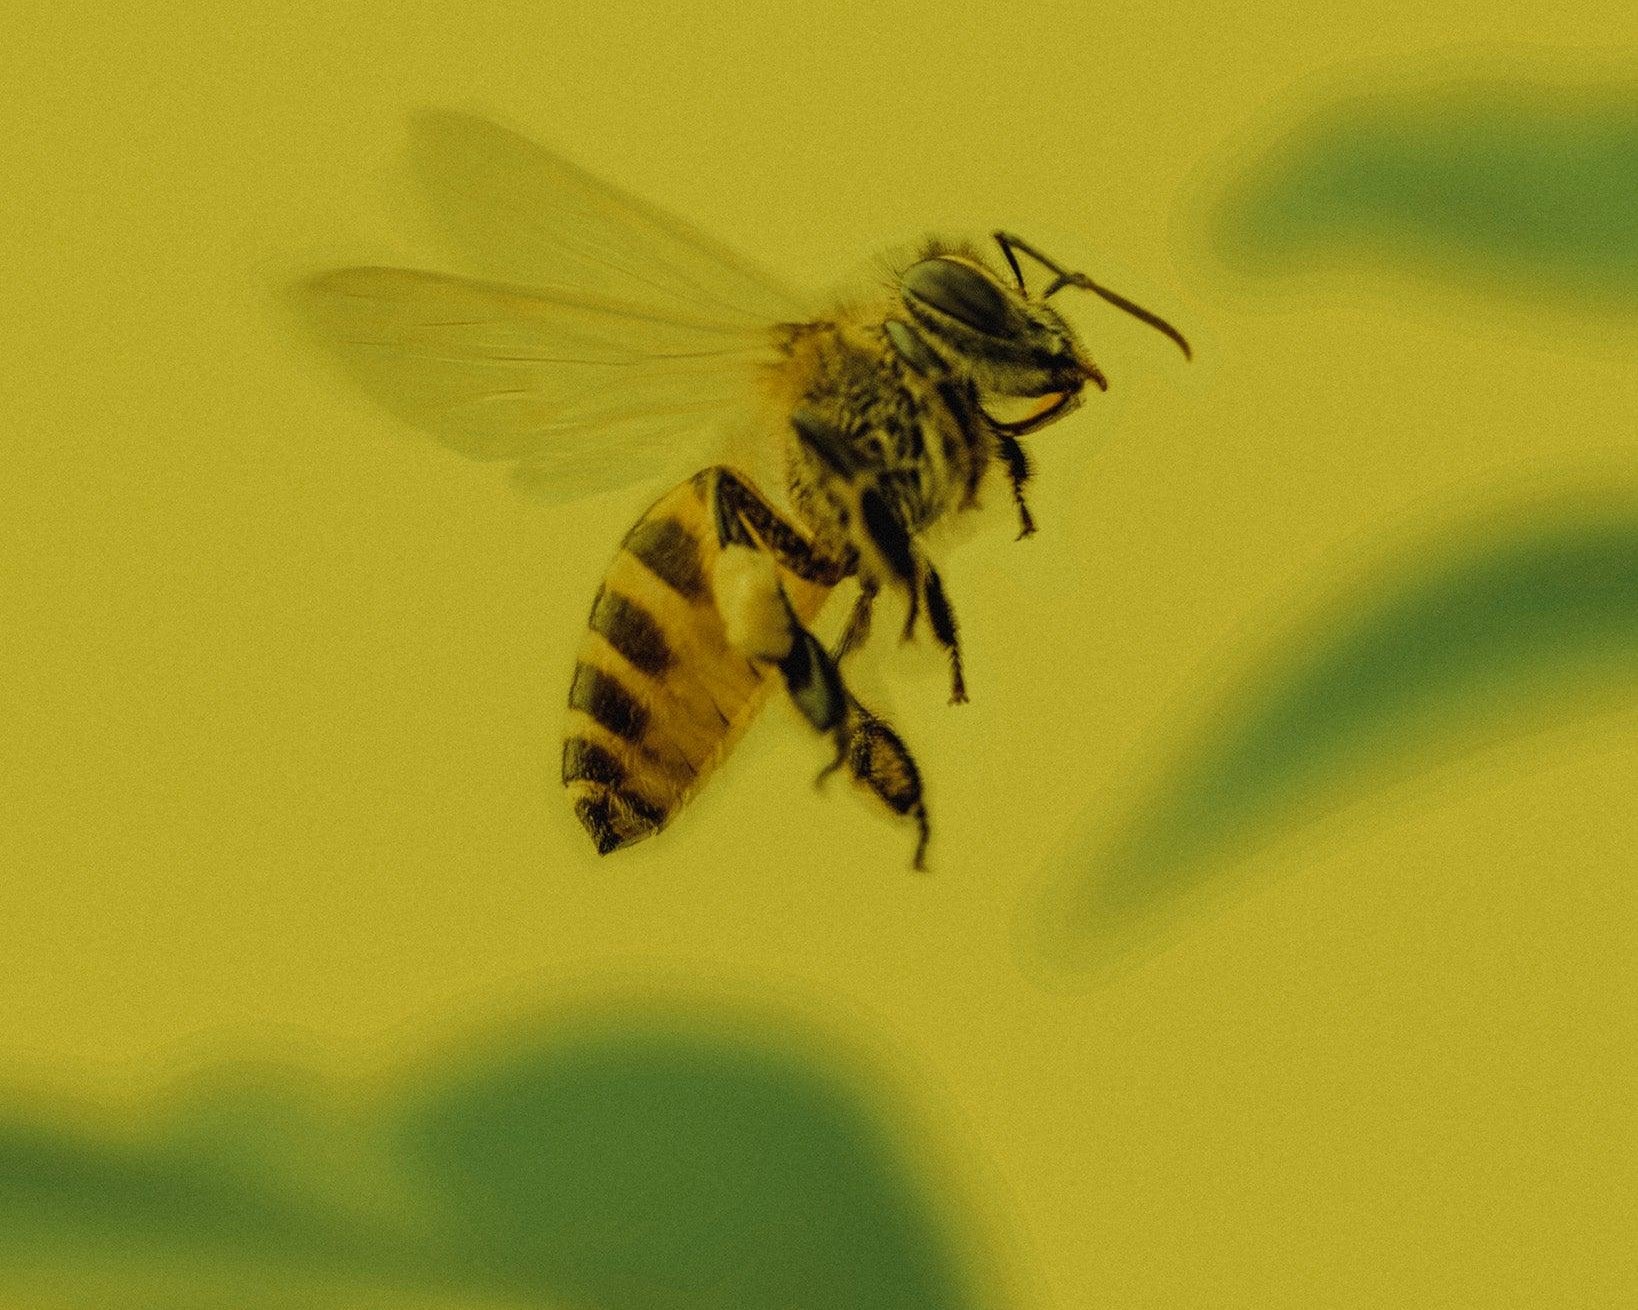 Výroba a využití včelích produktů: Přínosy a možnosti v Davidově ekologické včelí farmě - Davidova ekologická včelí farma